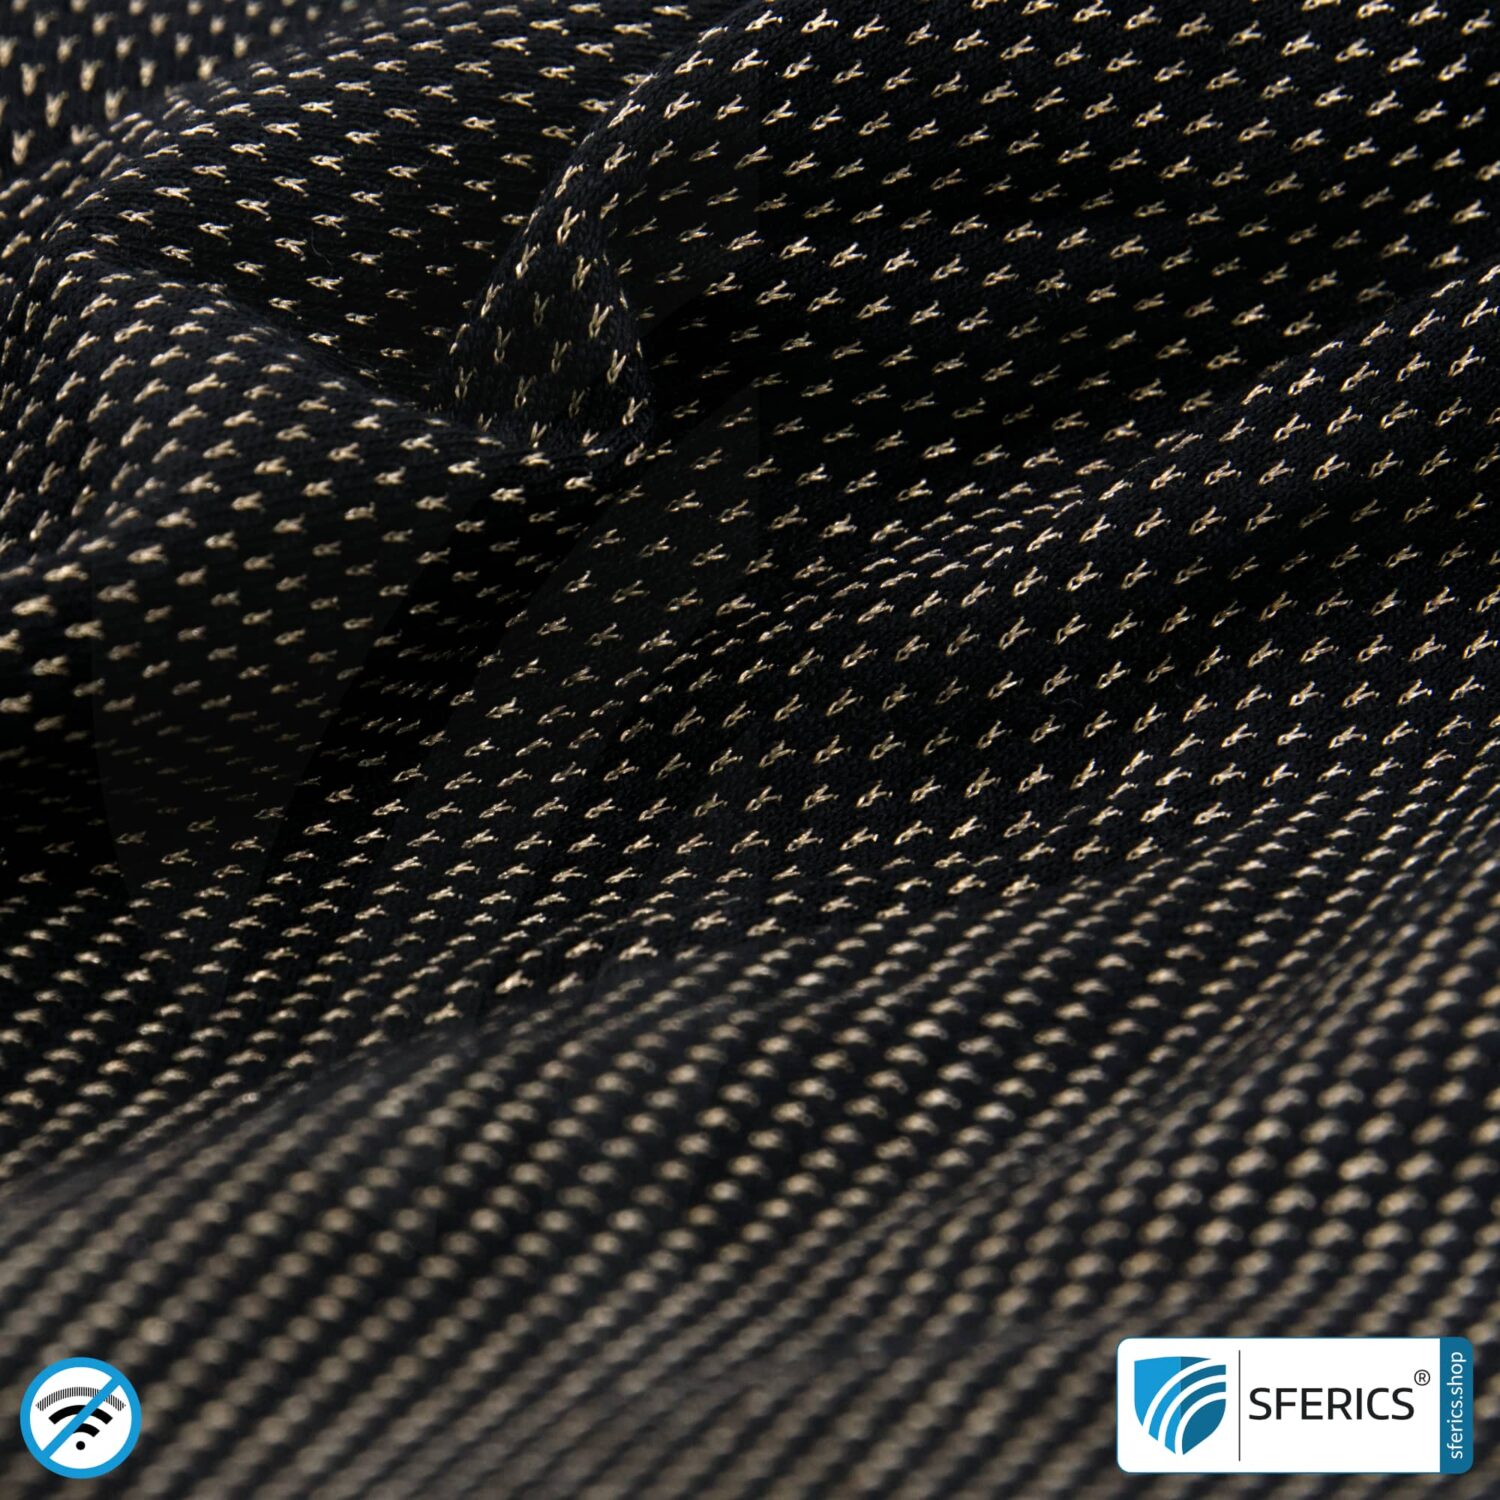 NEW ANTIWAVE Abschirmstoff | ideal zur Herstellung von Bekleidung und Unterbekleidung | schwarz | HF Schirmdämpfung gegen Elektrosmog bis zu 33 dB | 5G ready!